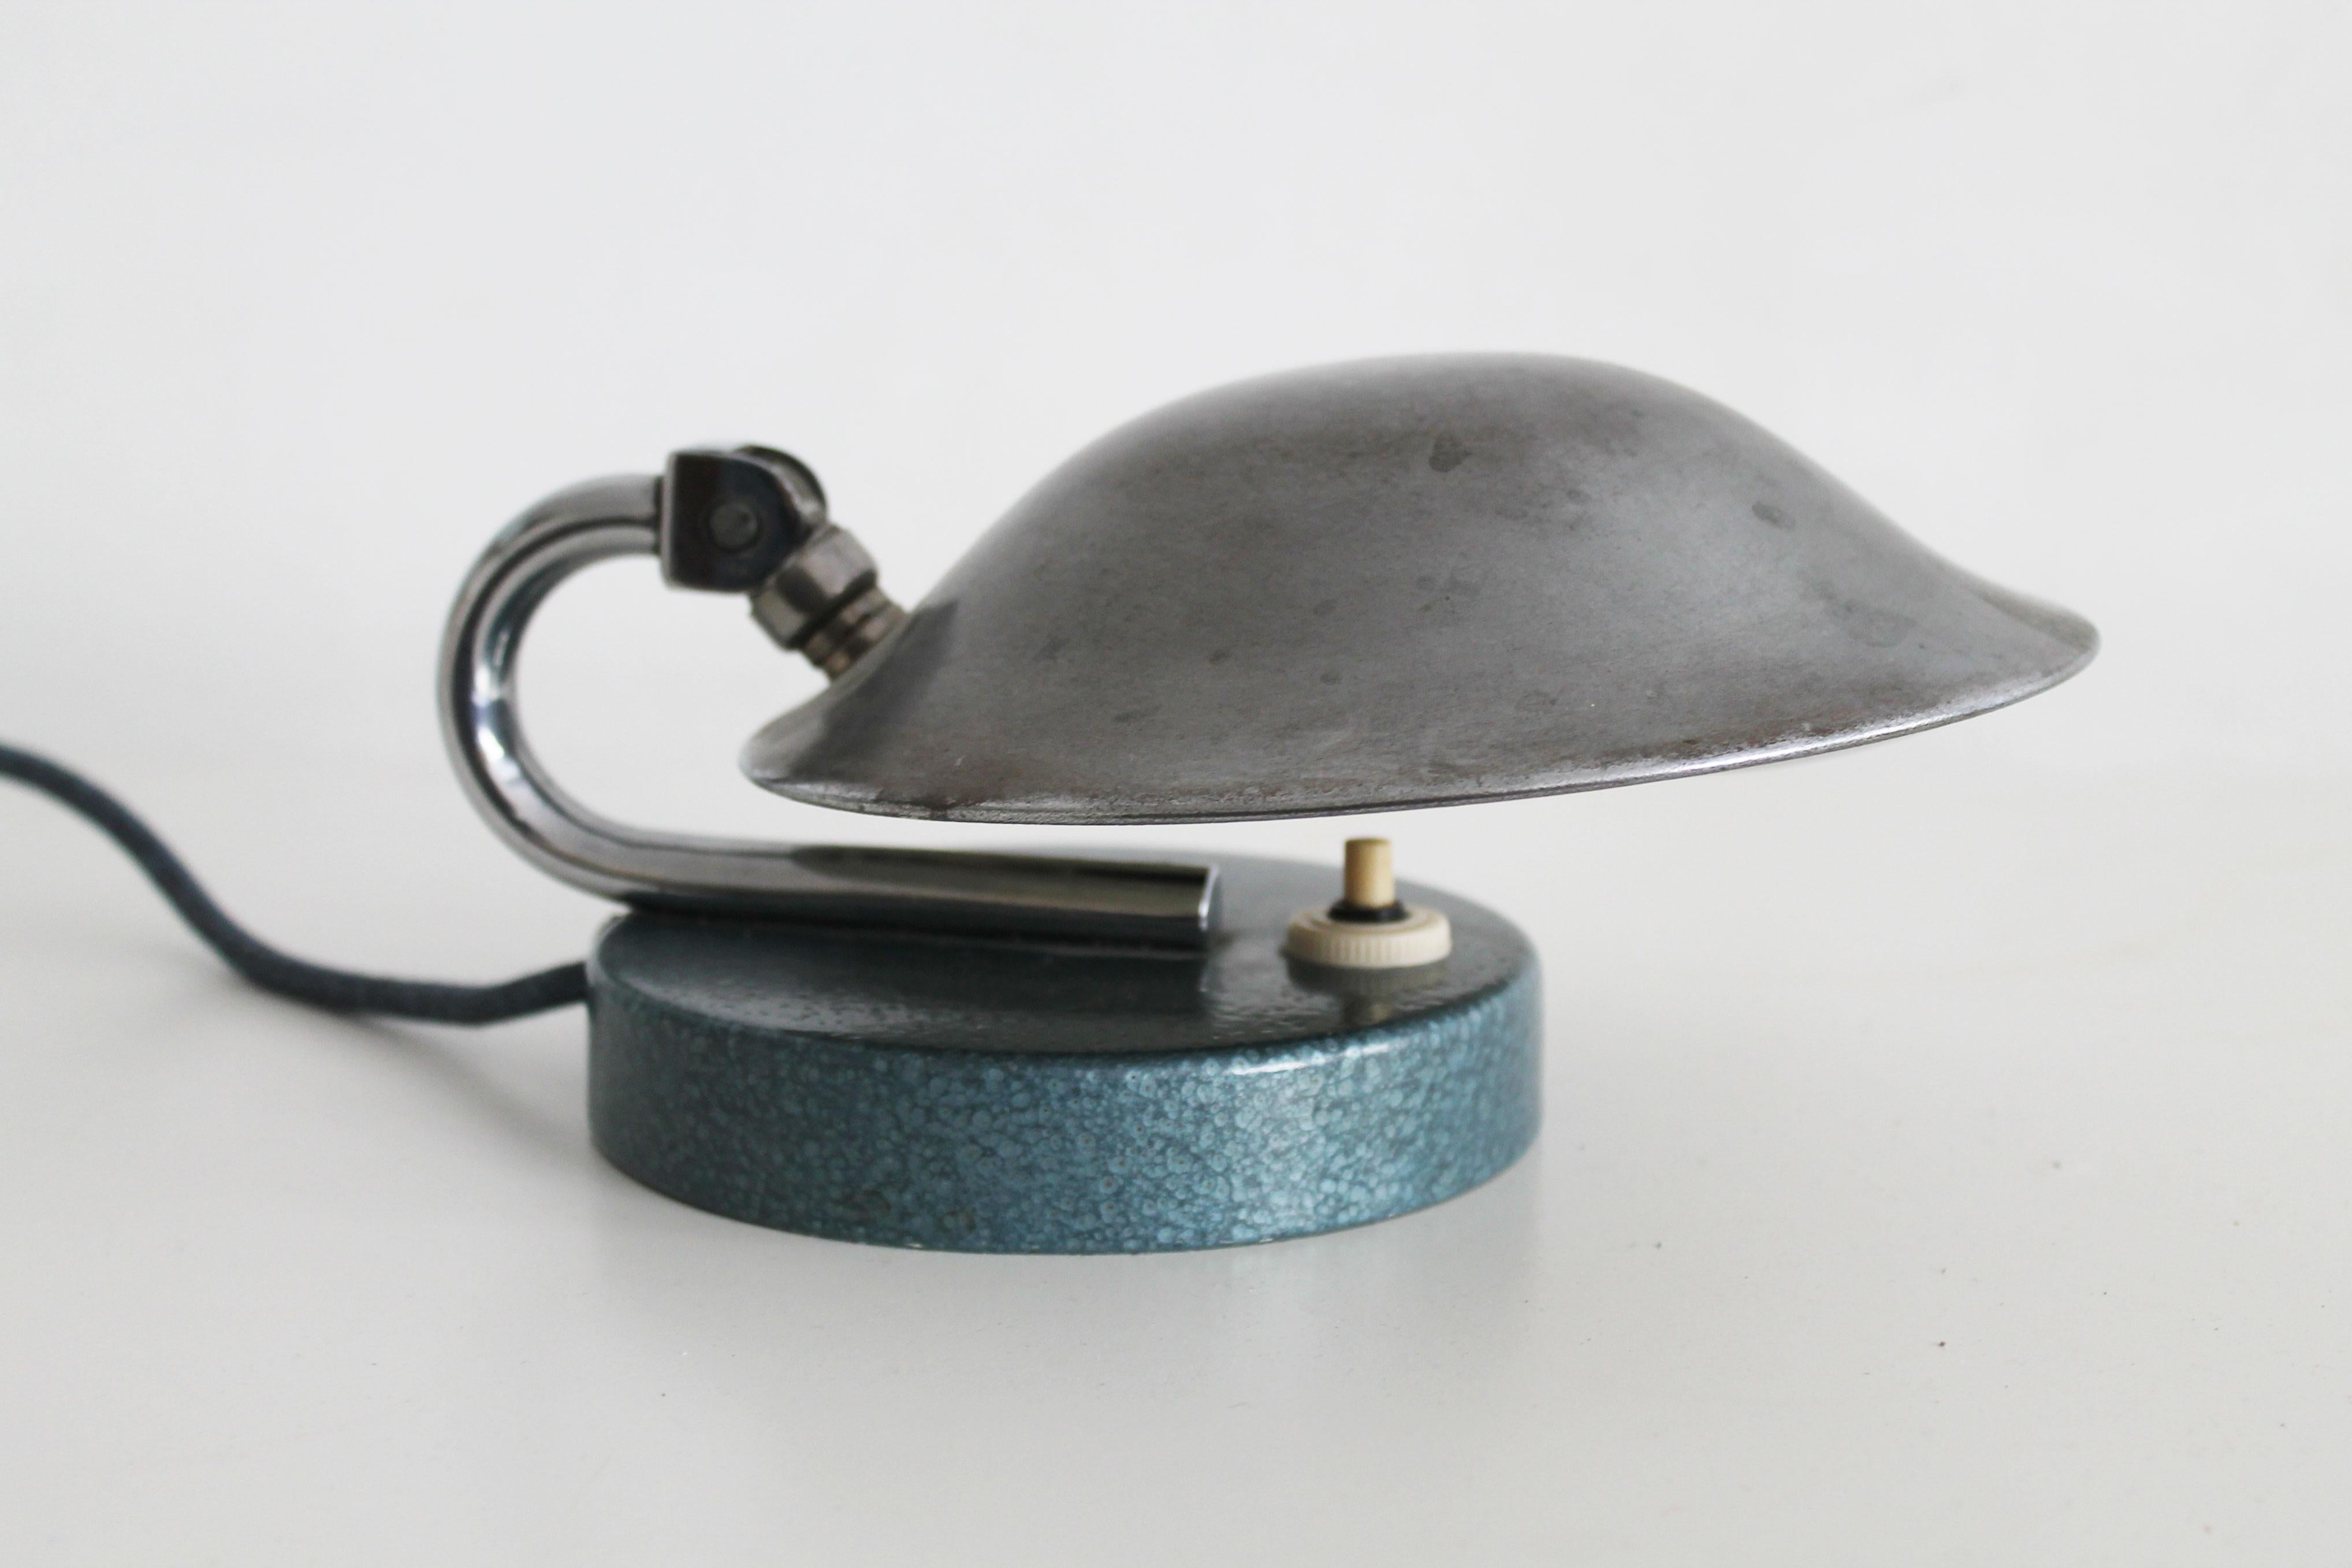 Il s'agit d'une lampe de table moderniste originale produite dans les années 1930 par The Company Napako. Elle a été conçue par Carl Jucker, qui est devenu célèbre par la suite pour son design de la lampe de table désormais emblématique (en